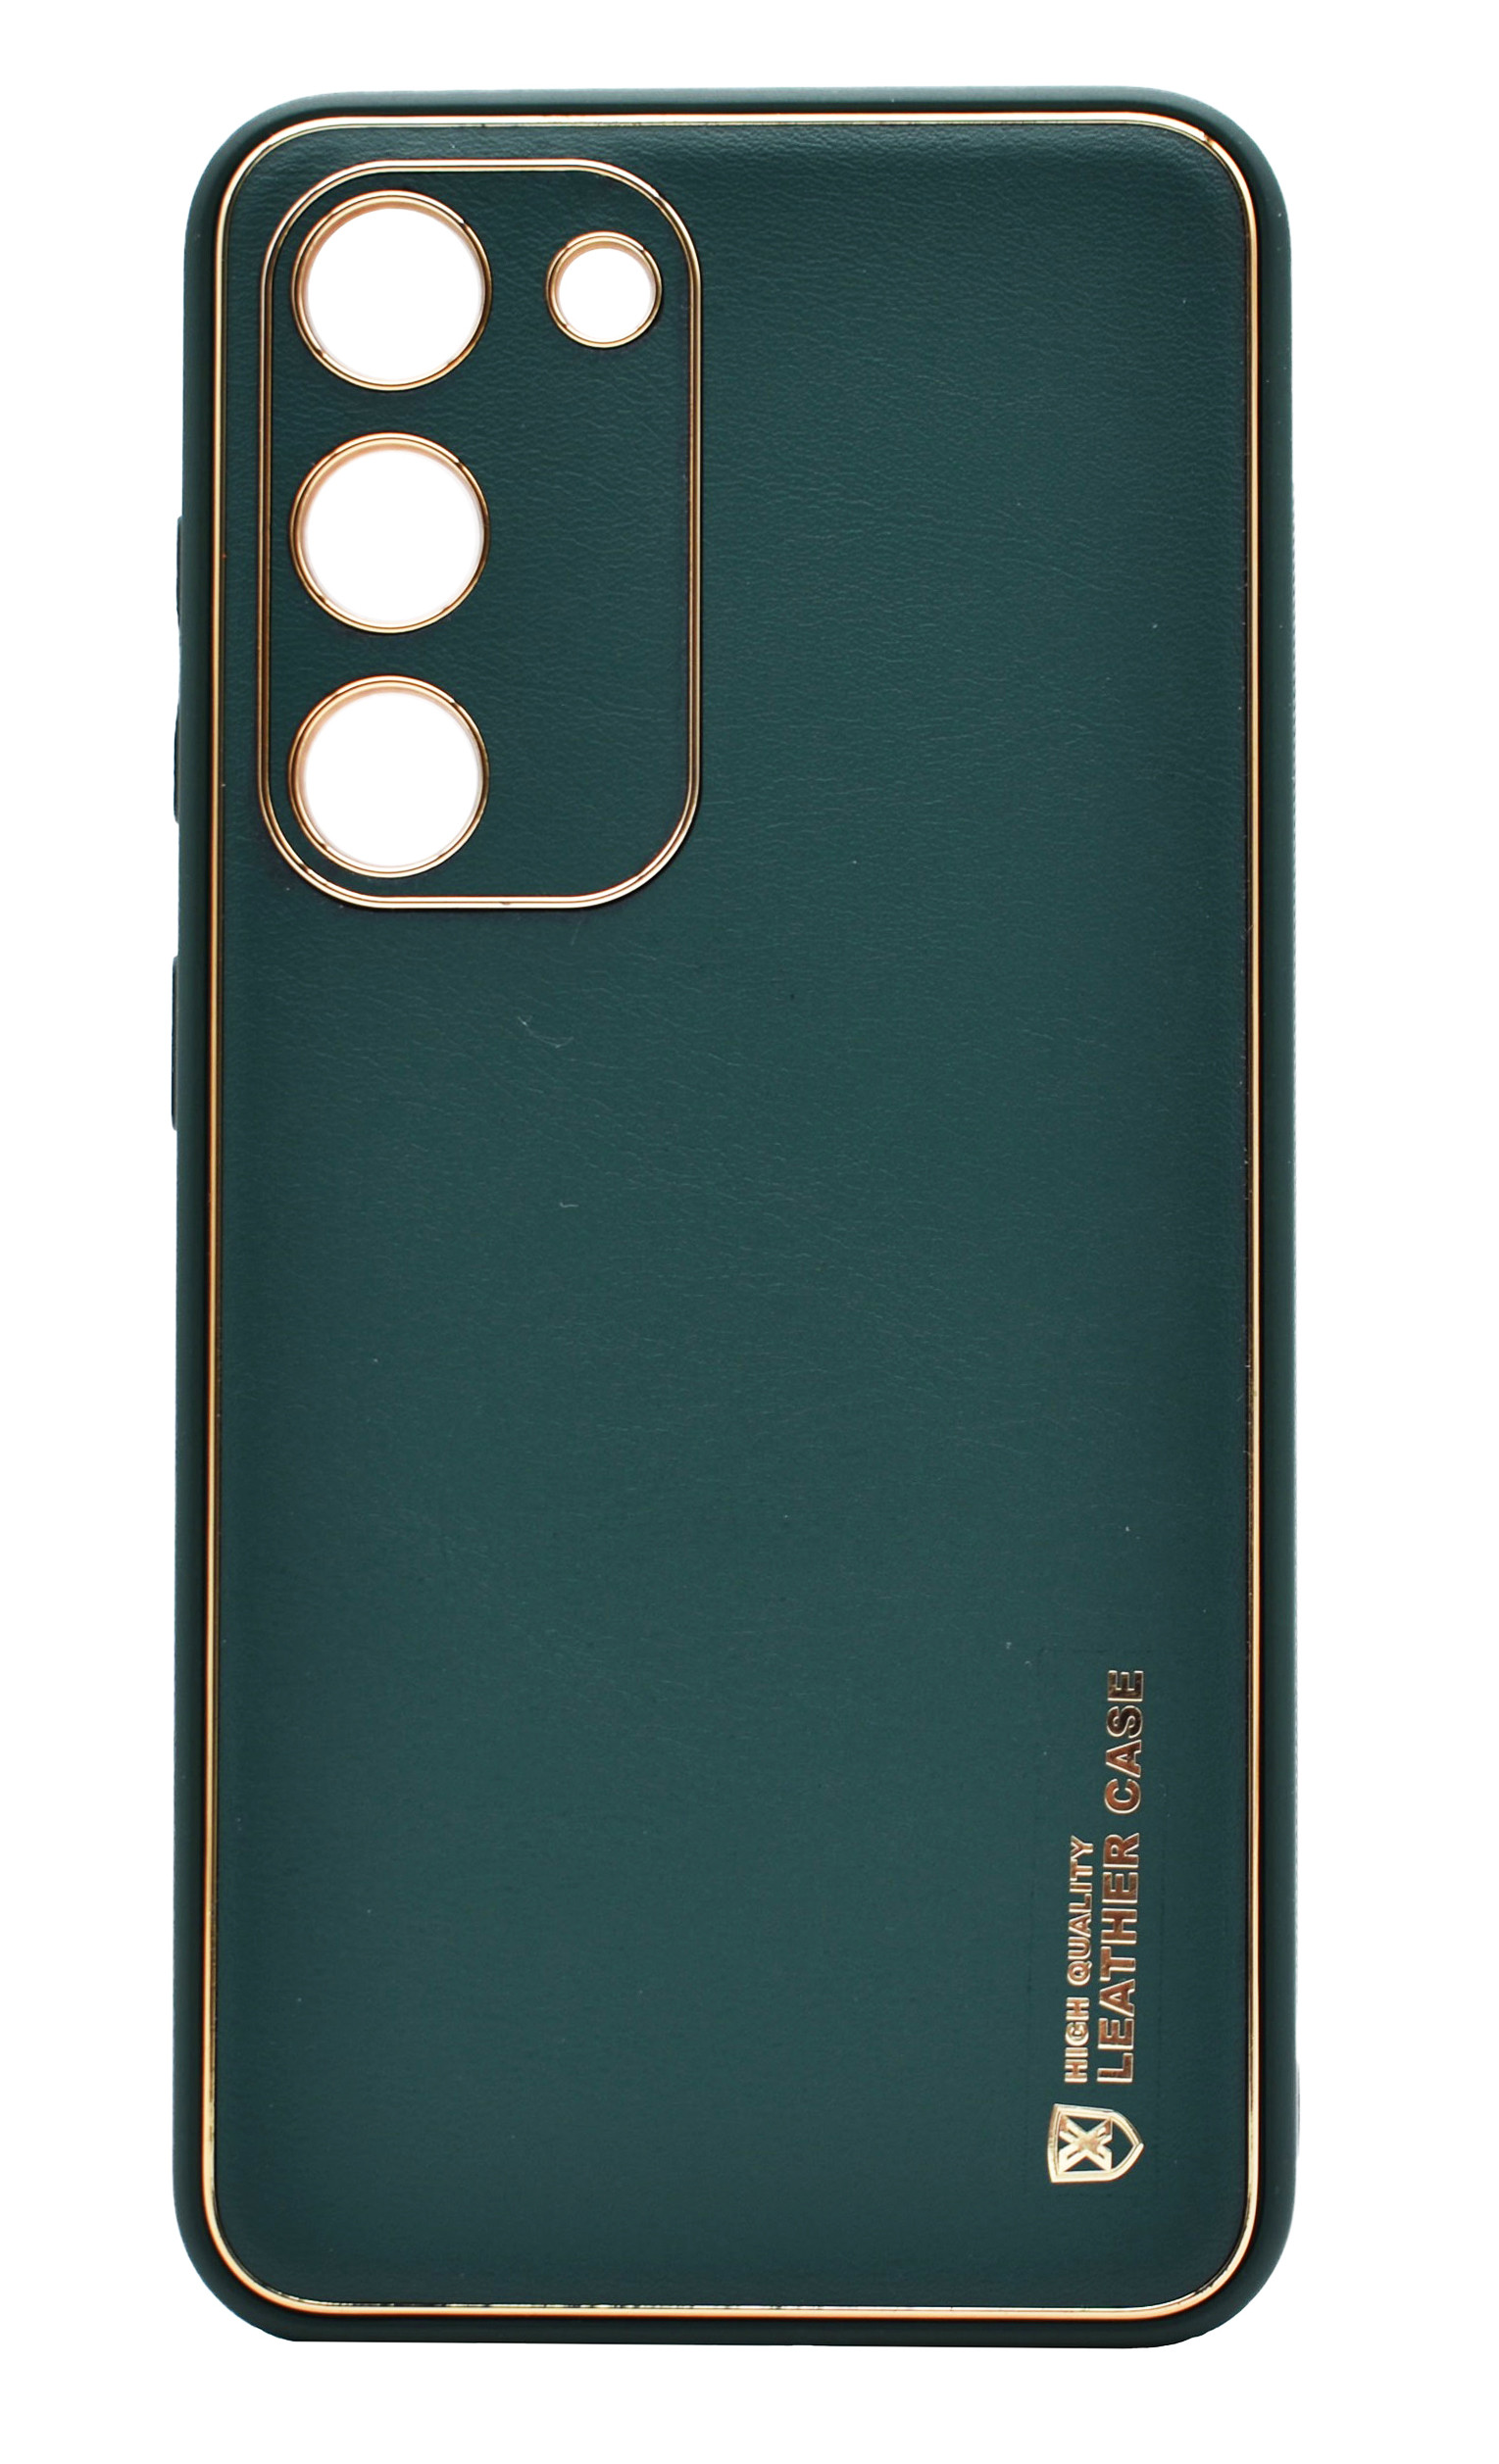 Husa eleganta din piele ecologica pentru Samsung Galaxy S22 cu accente aurii, Verde inchis